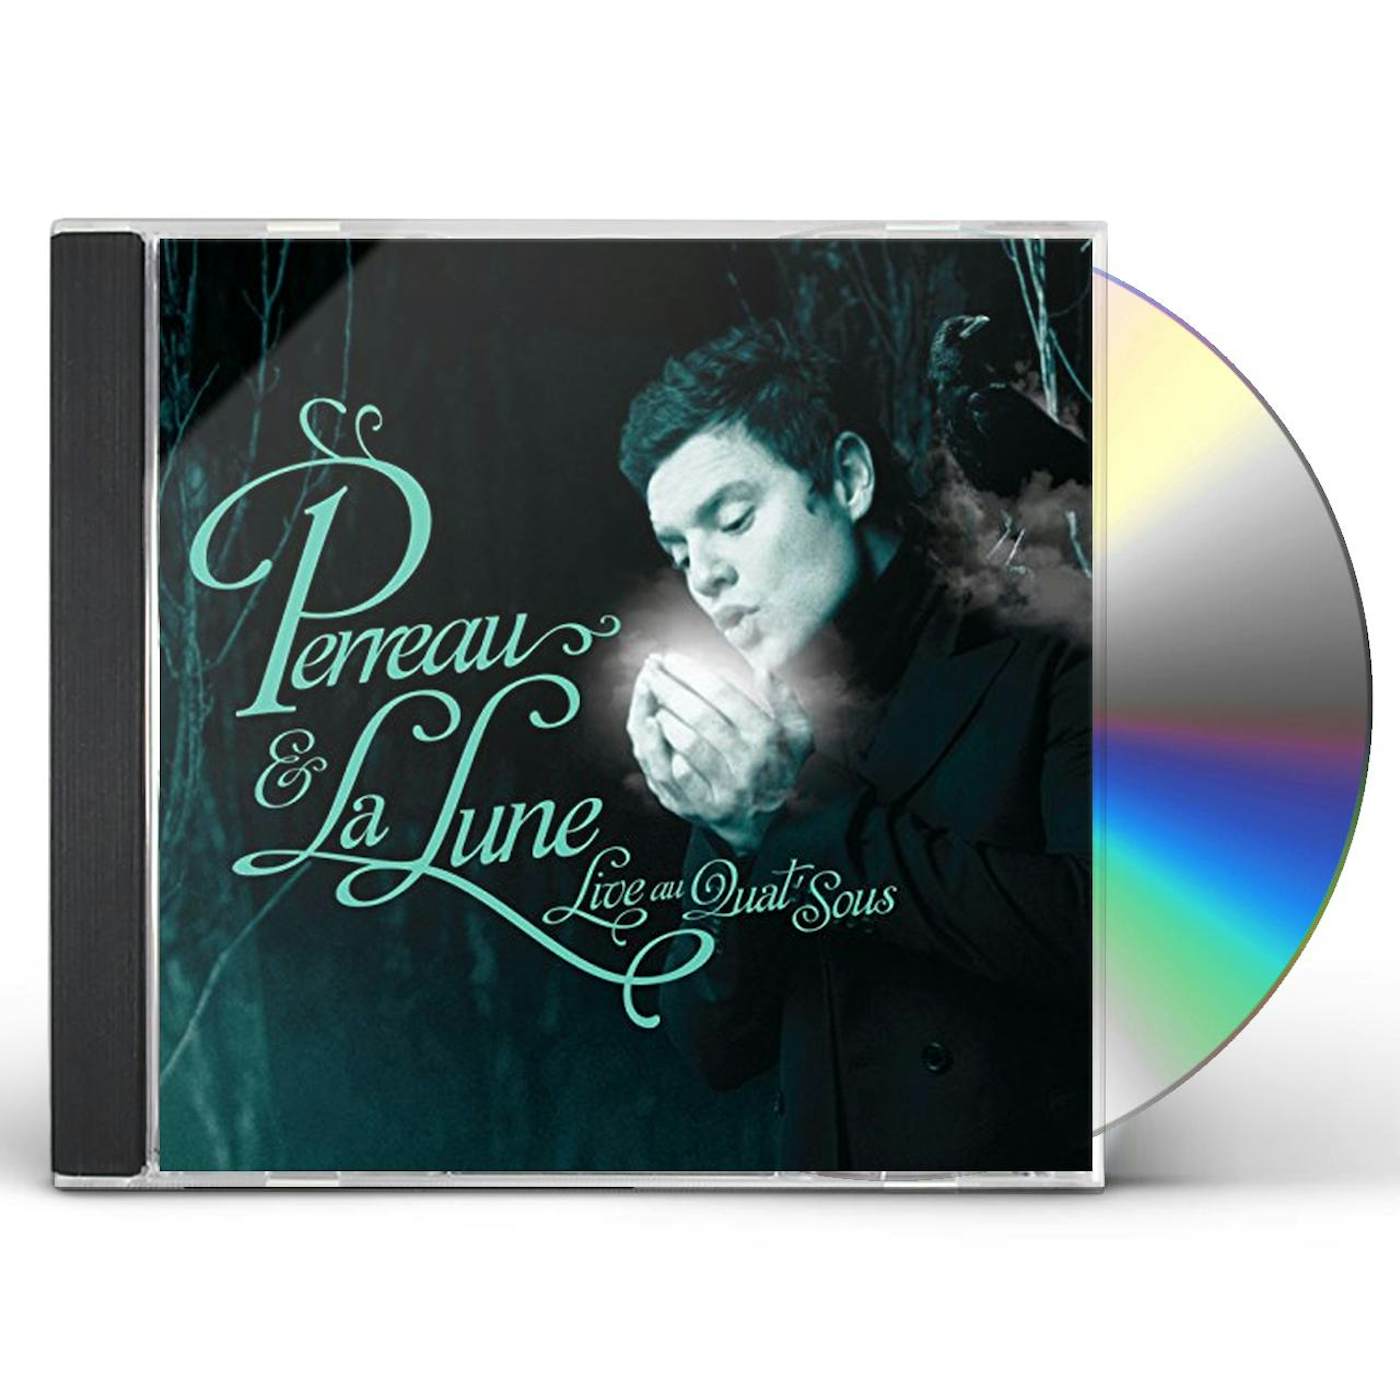 Yann Perreau PERREAU & LA LUNE LIVE AU QUAT SOUS CD